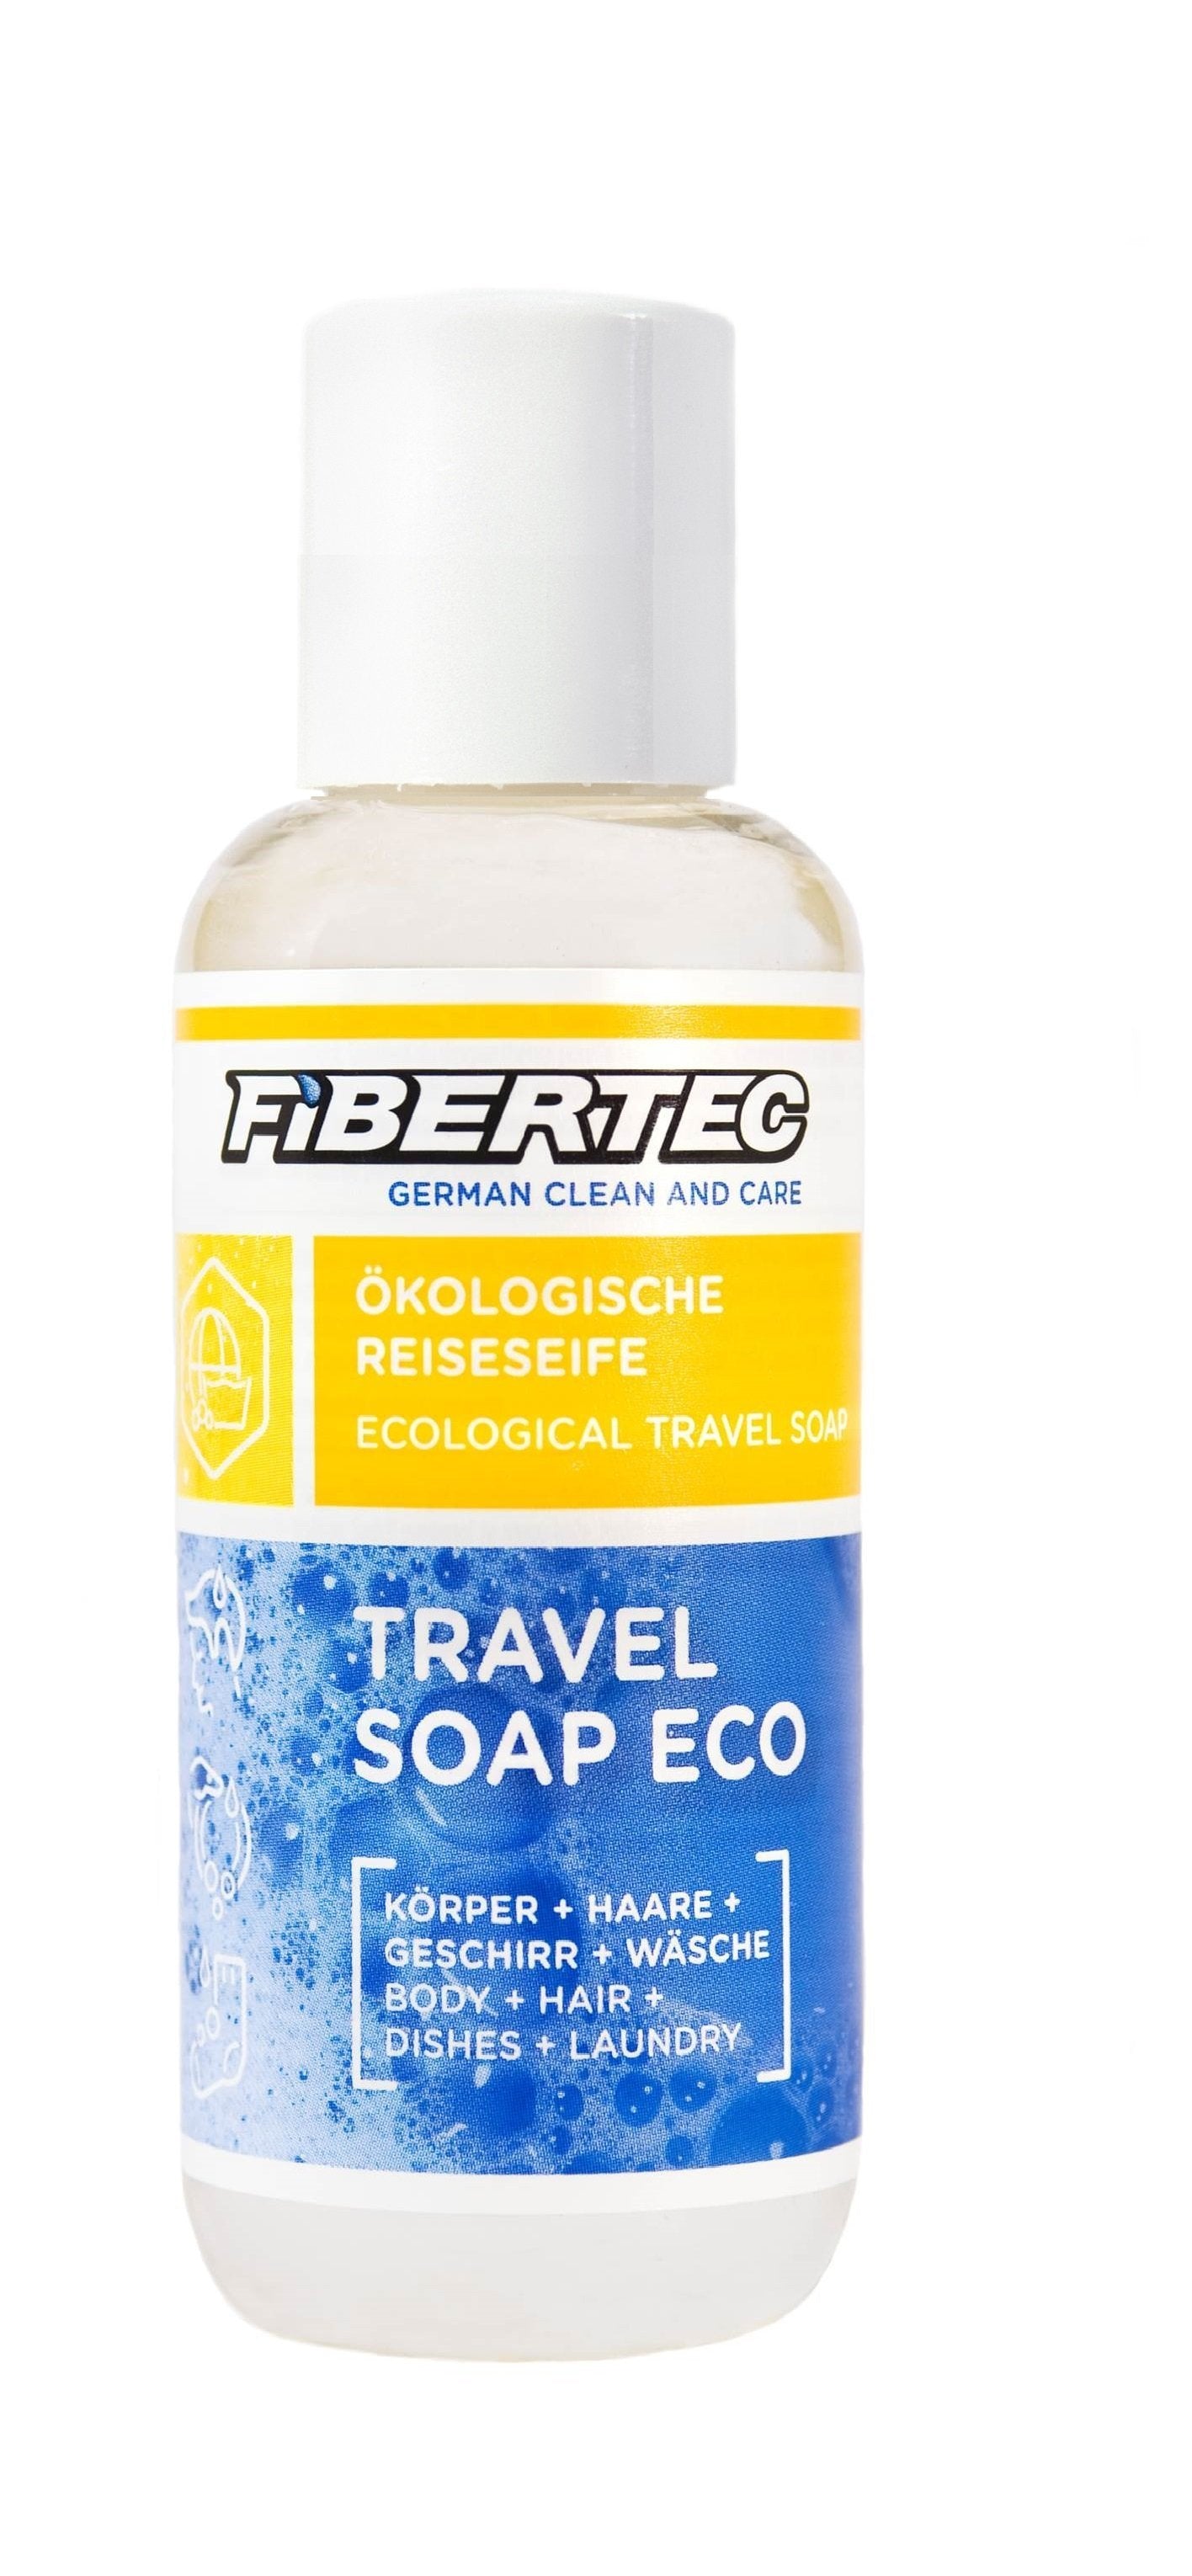 Fibertec Travel Soap Eco 250ml